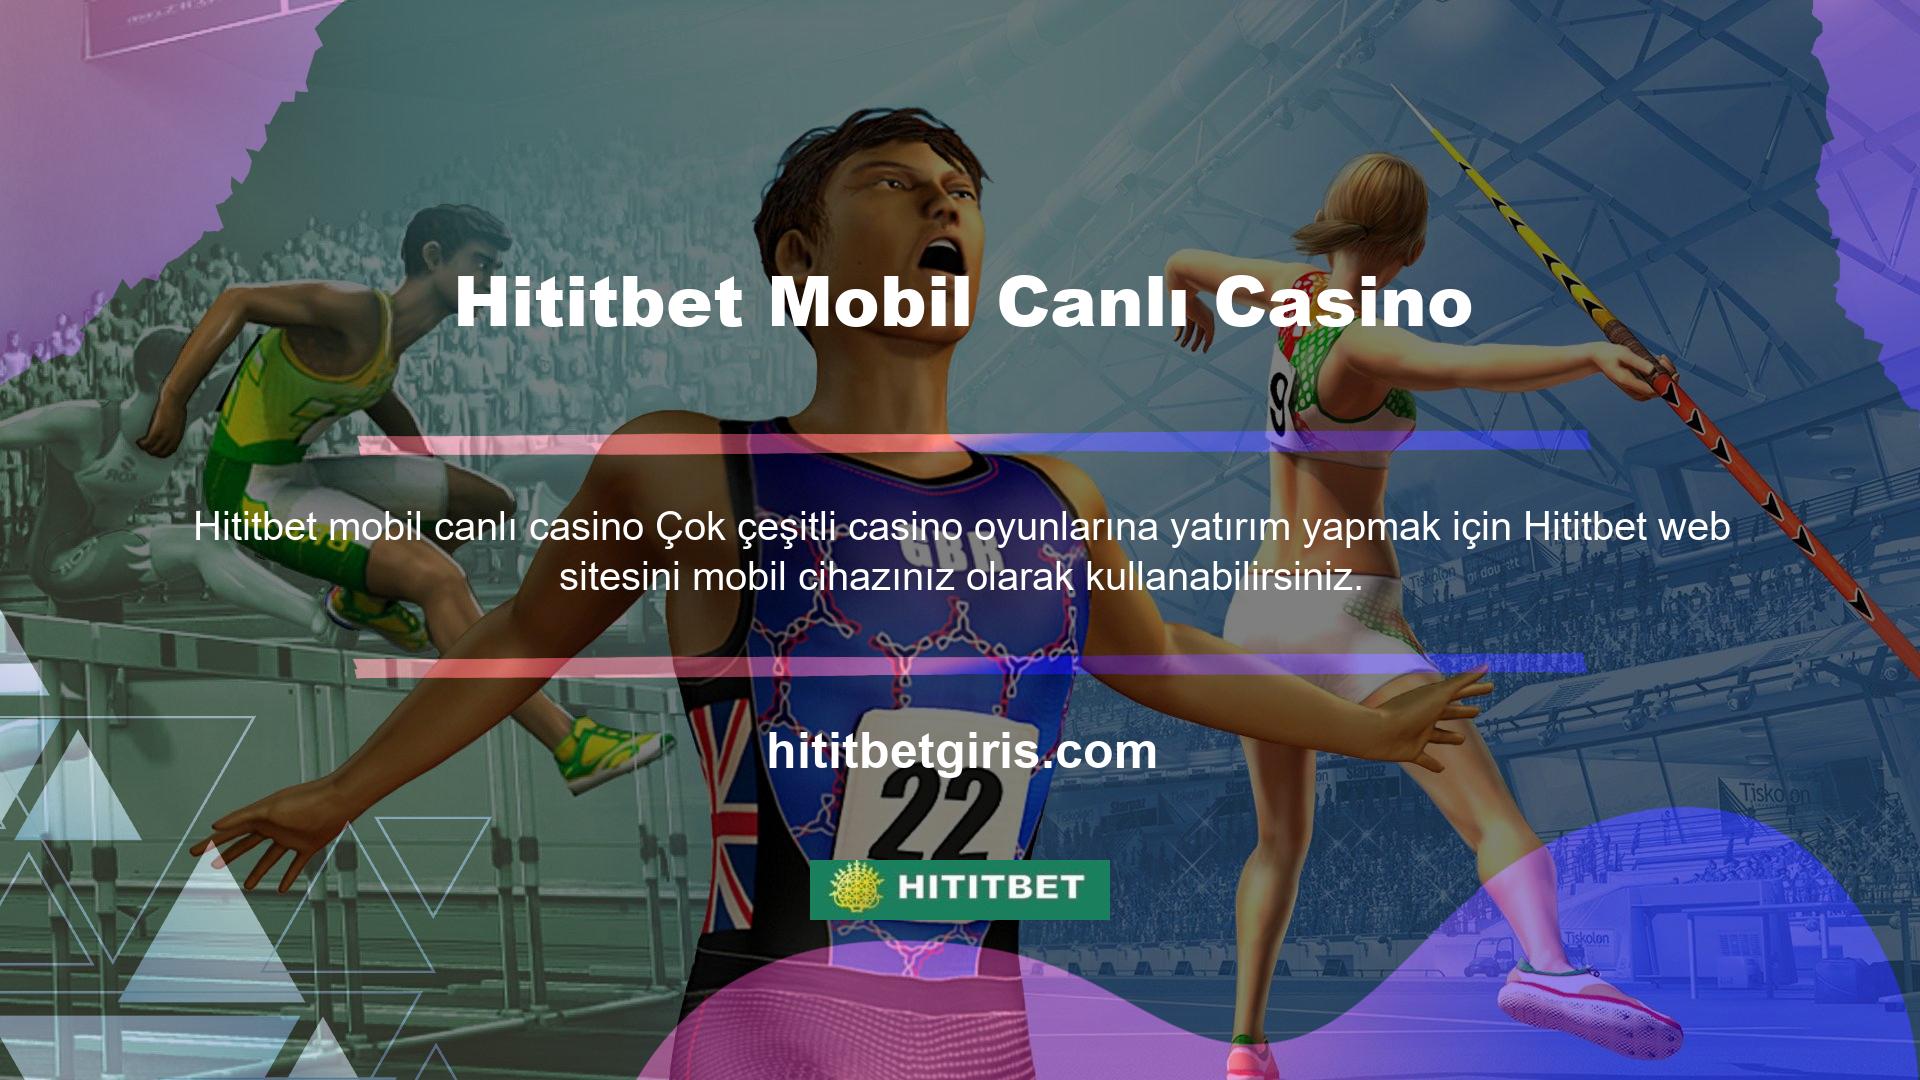 Hititbet mobil cihazlardaki canlı casino oyunları çok uygundur ve en yüksek kalitede çalışır